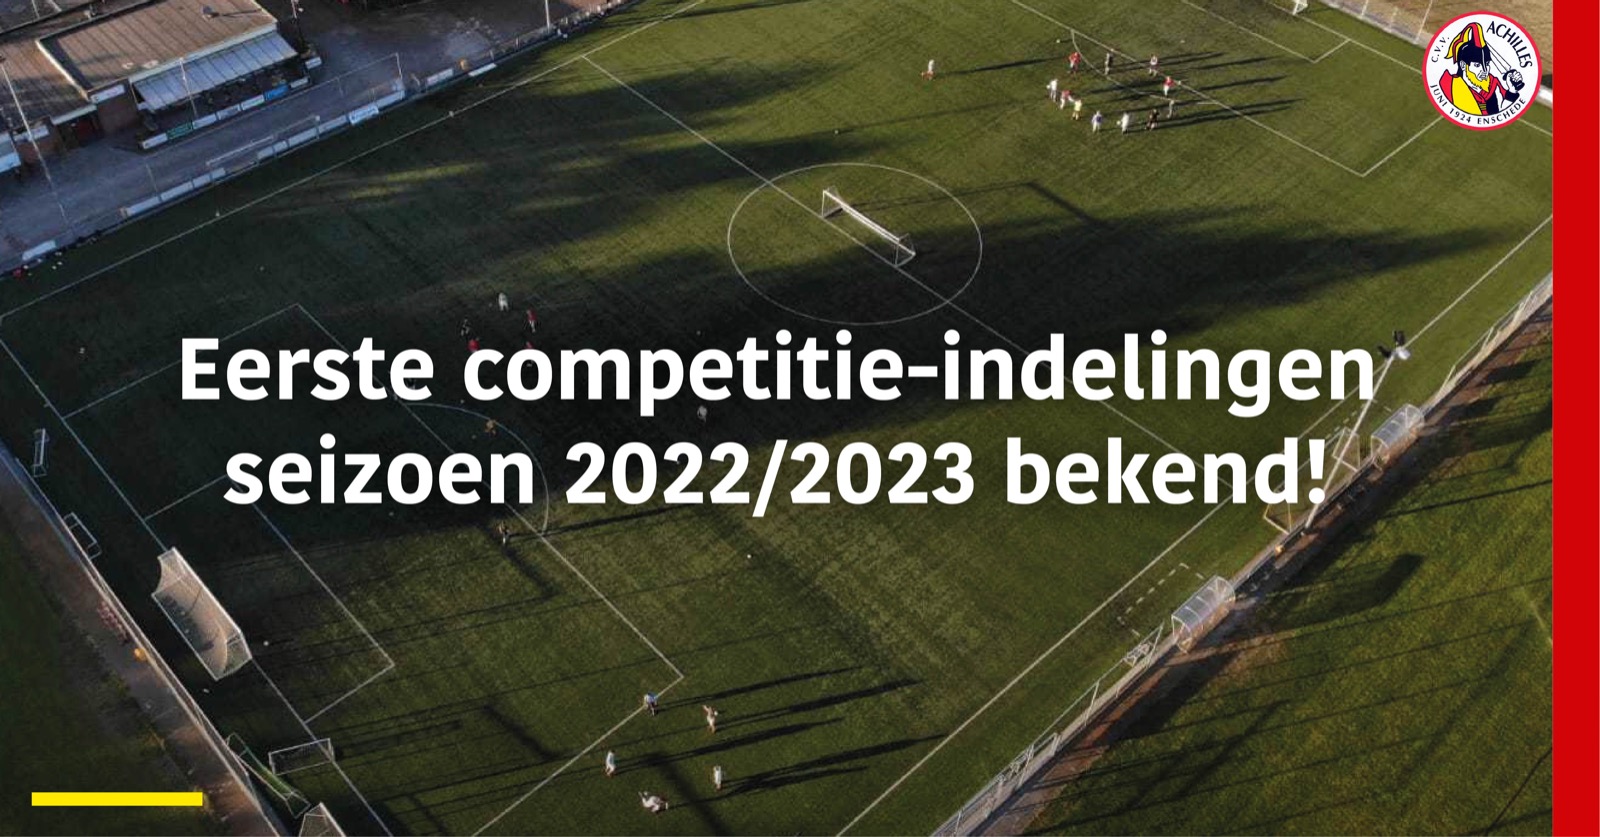 Eerste competitie-indelingen seizoen 2022/2023 bekend!